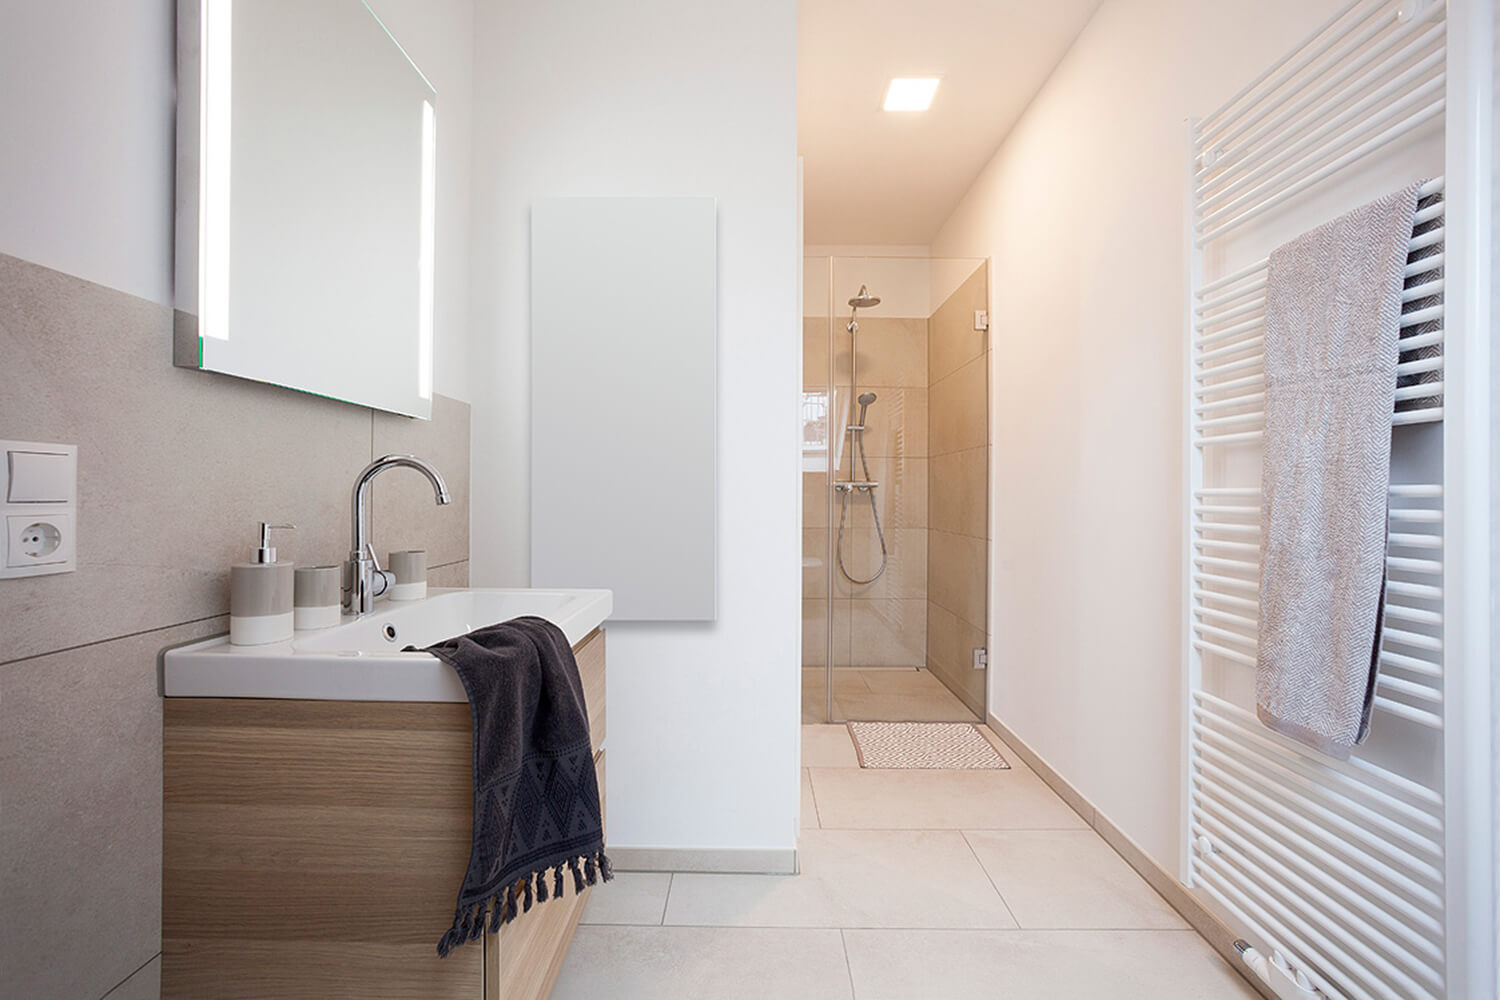 Elegante Wandheizung, die Infrarot-Wandheizung Slim Line & Slim Line Image – mit und ohne Bildmotiv – Badezimmer weiß – CILING Infrarot-Heizsysteme